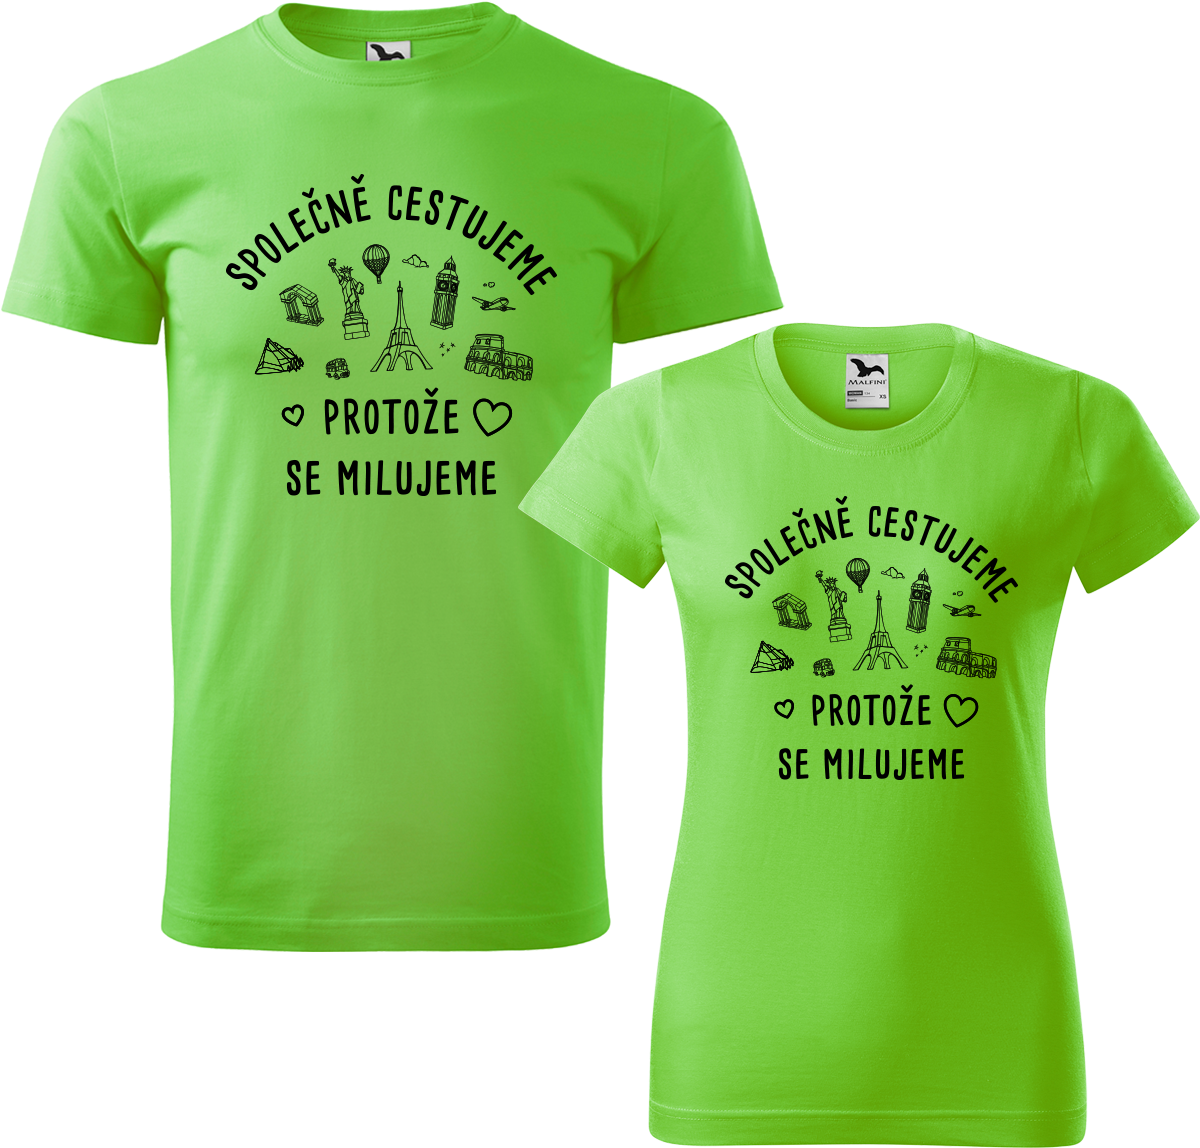 Tričko pro páry - Společně cestujeme protože se milujeme Barva: Apple Green (92), Velikost dámské tričko: S, Velikost pánské tričko: S